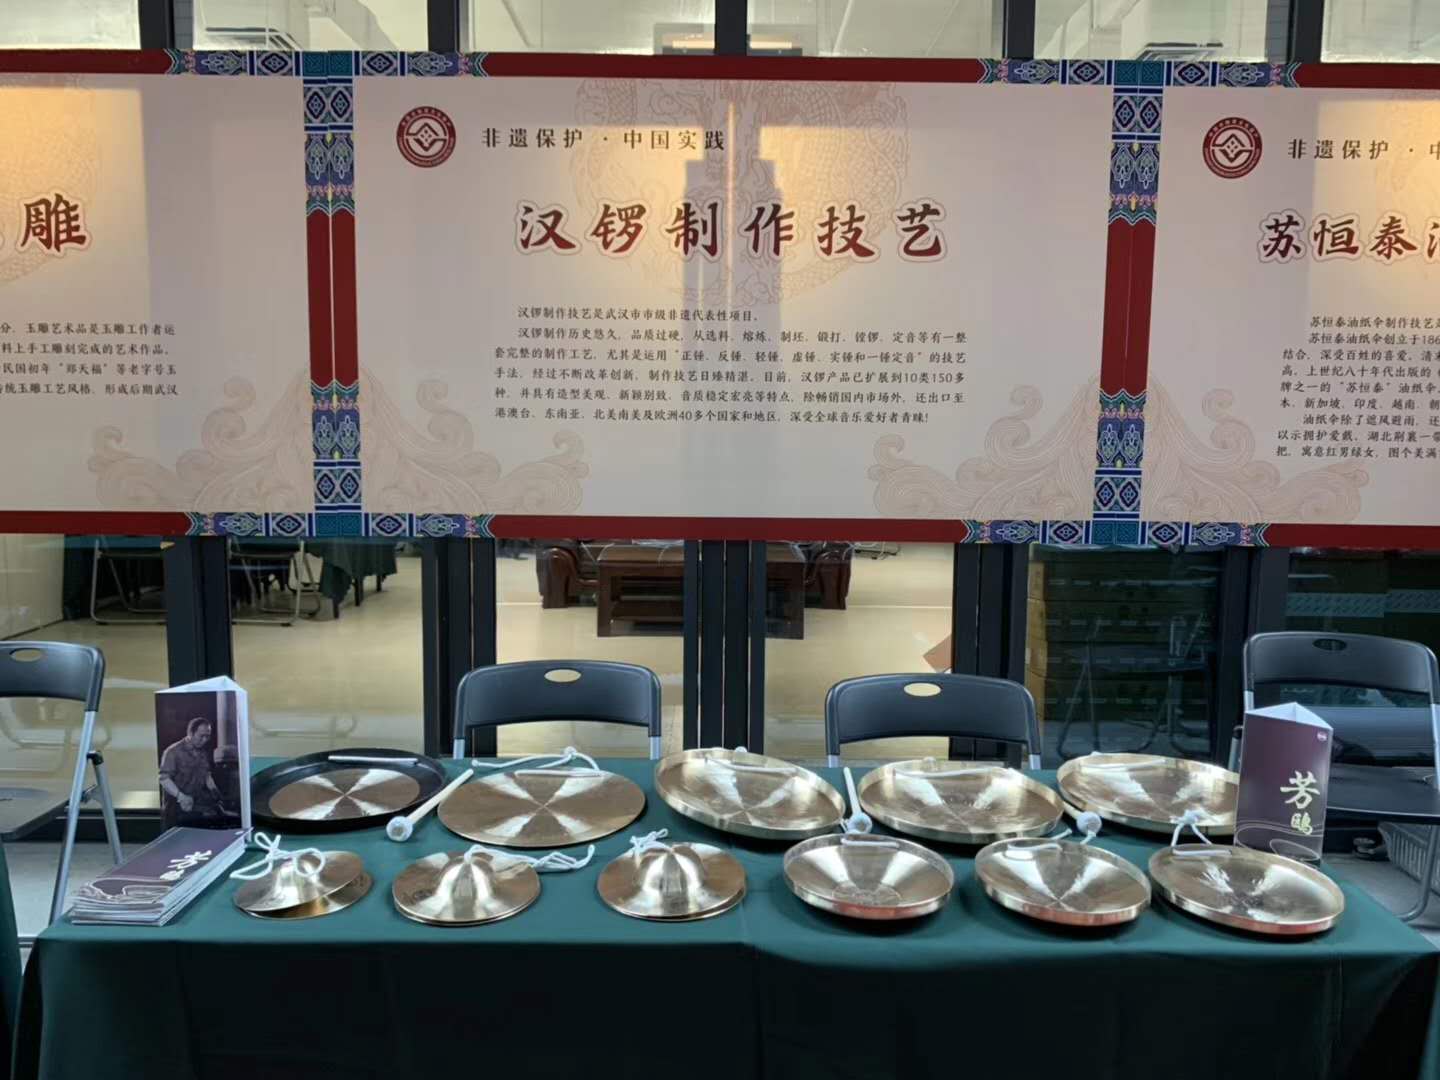 海平乐器参加湖北省“文化和自然遗产日”暨“中国汉绣圈”揭牌仪式